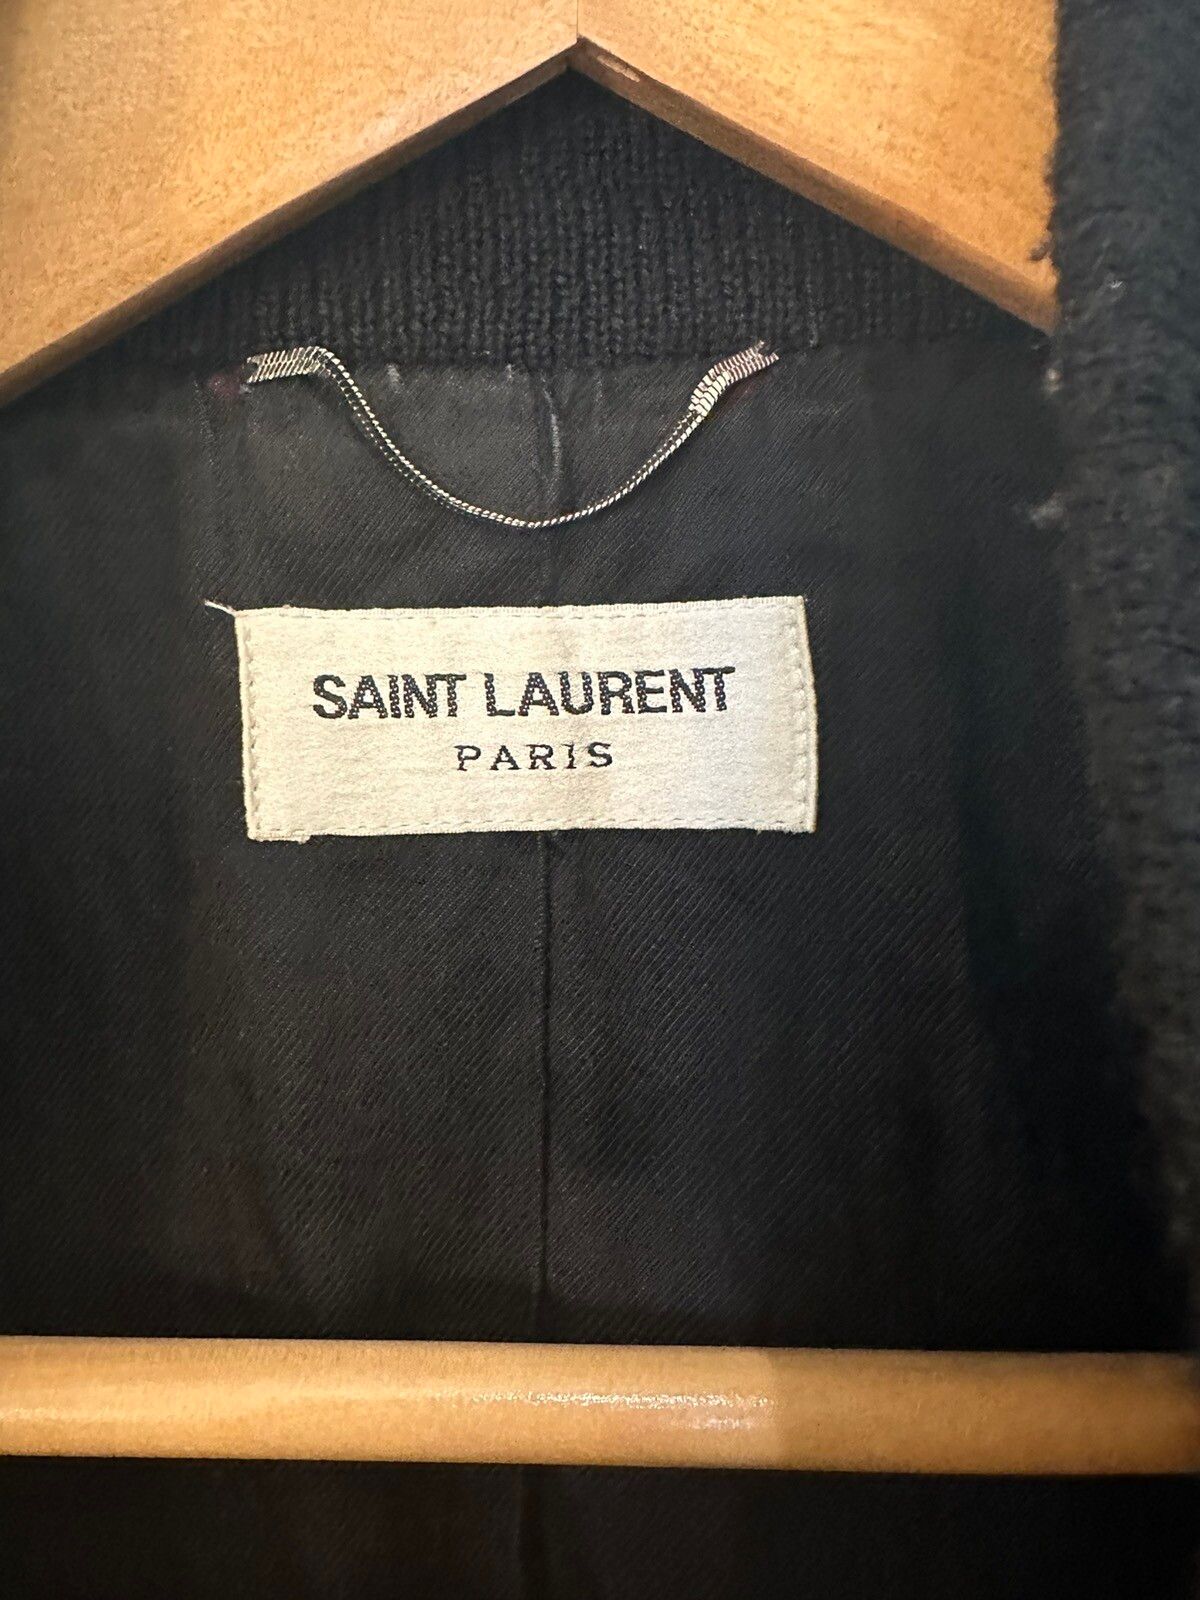 Saint Laurent Paris 2018 Saint Laurent Teddy Jacket Size US S / EU 44-46 / 1 - 4 Thumbnail